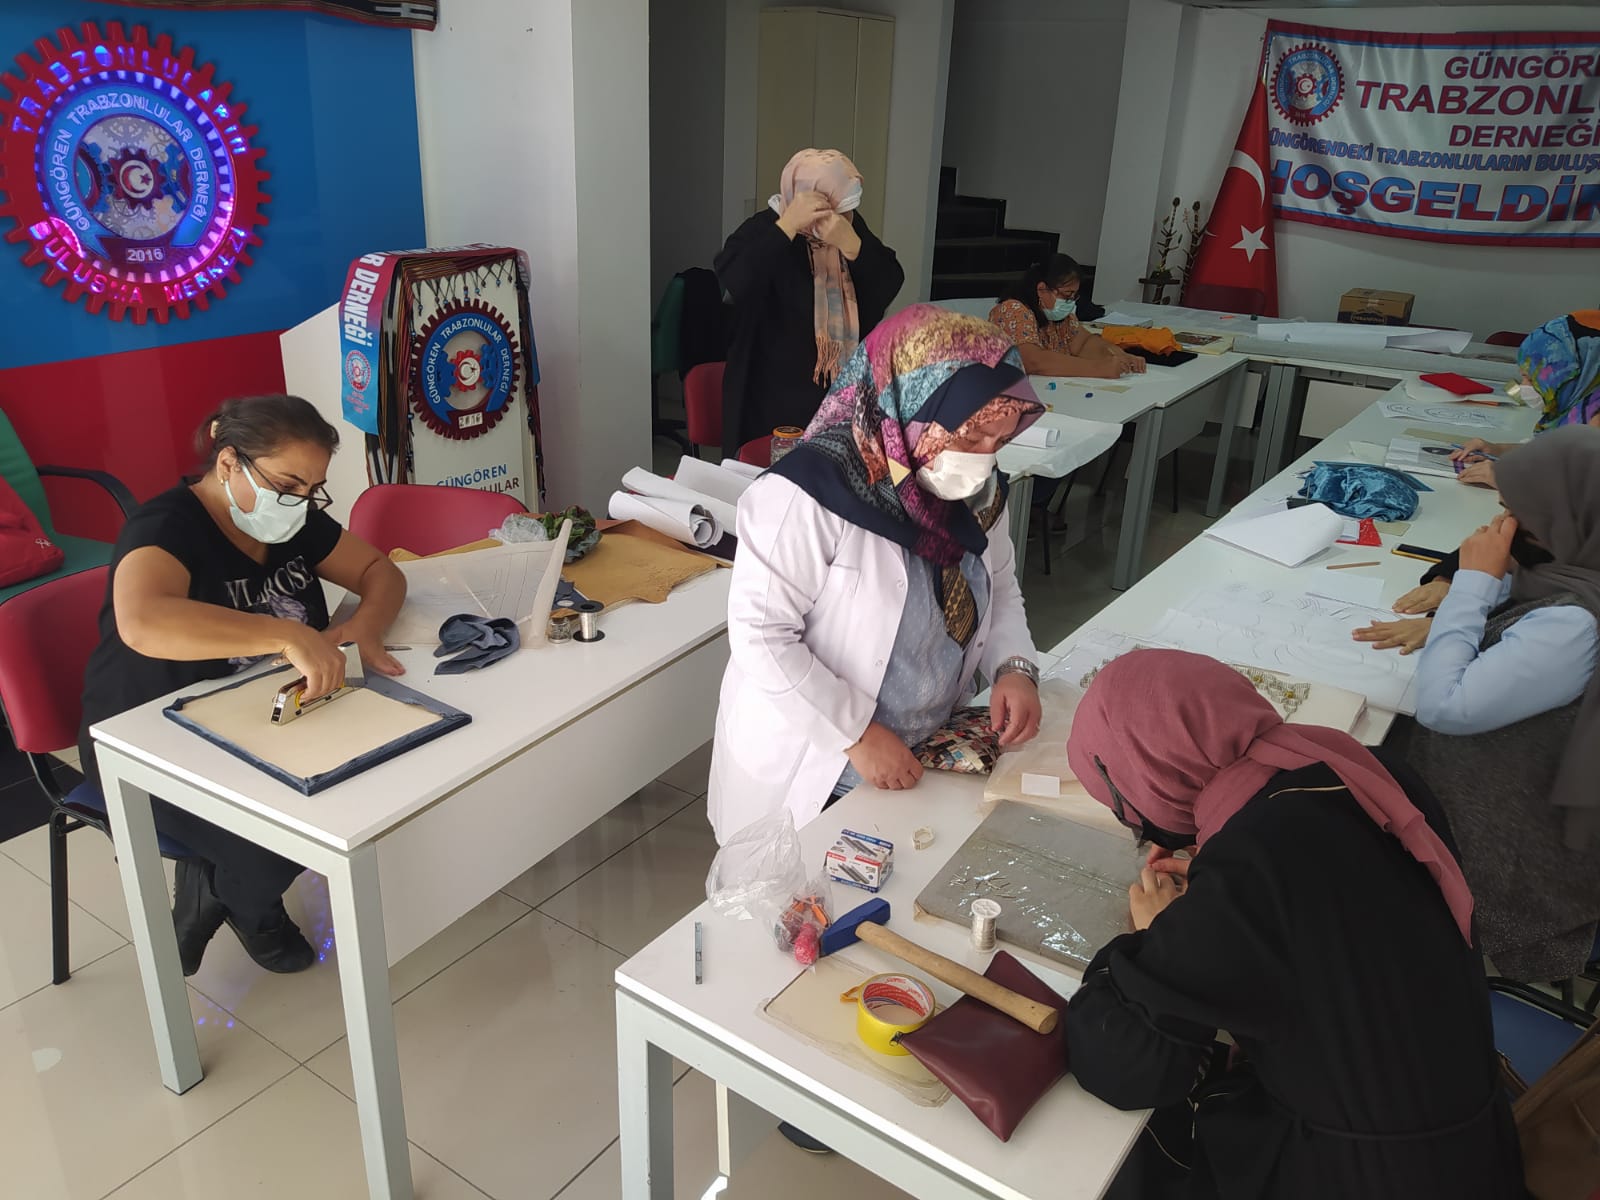 Güngören Trabzonlular Derneği Filografi kursuna kapılarını açtı